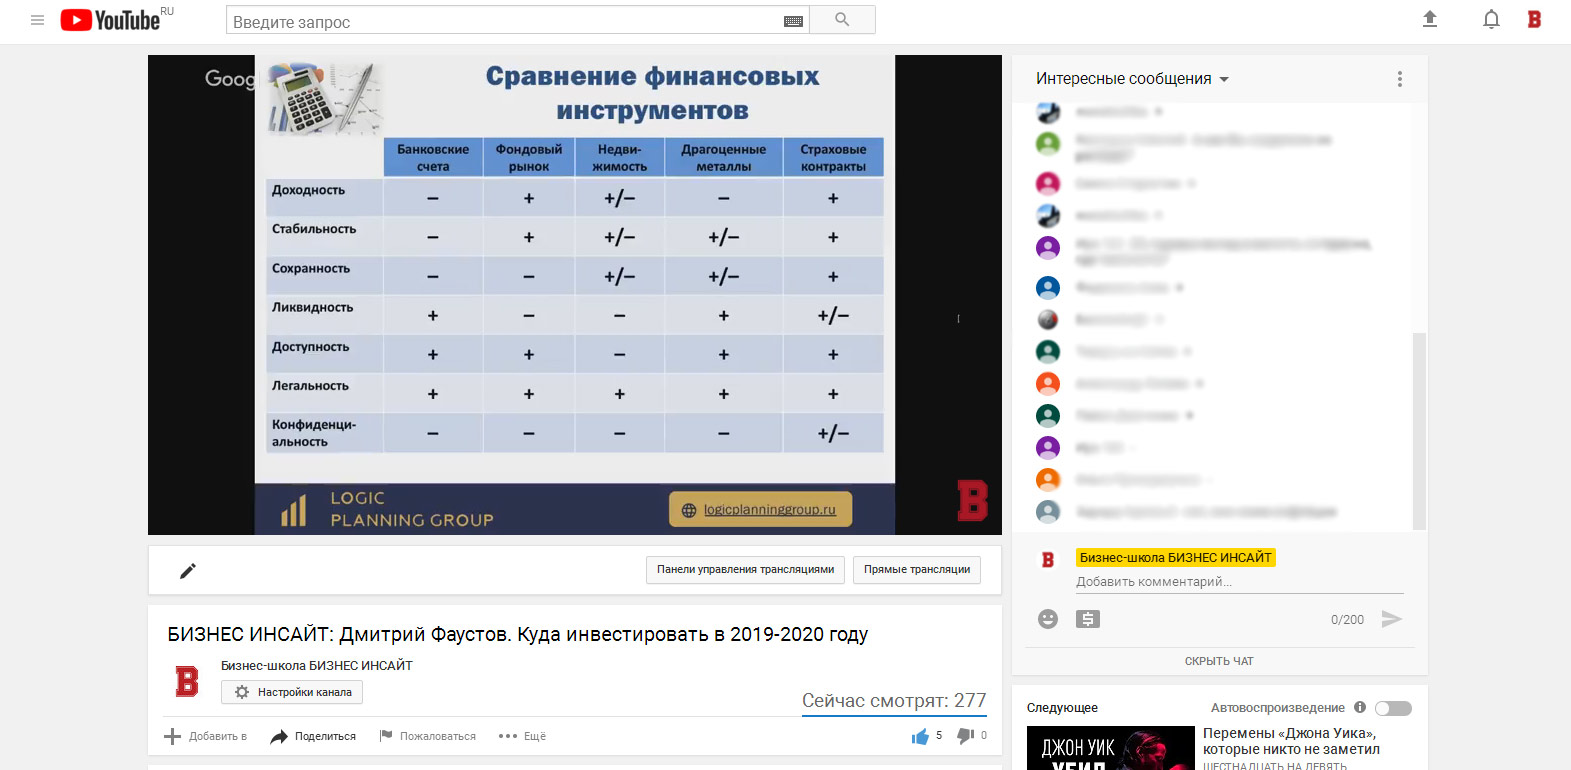 Дмитрий Фаустов провел открытый (бесплатный) вебинар на площадке БИЗНЕС ИНСАЙТ